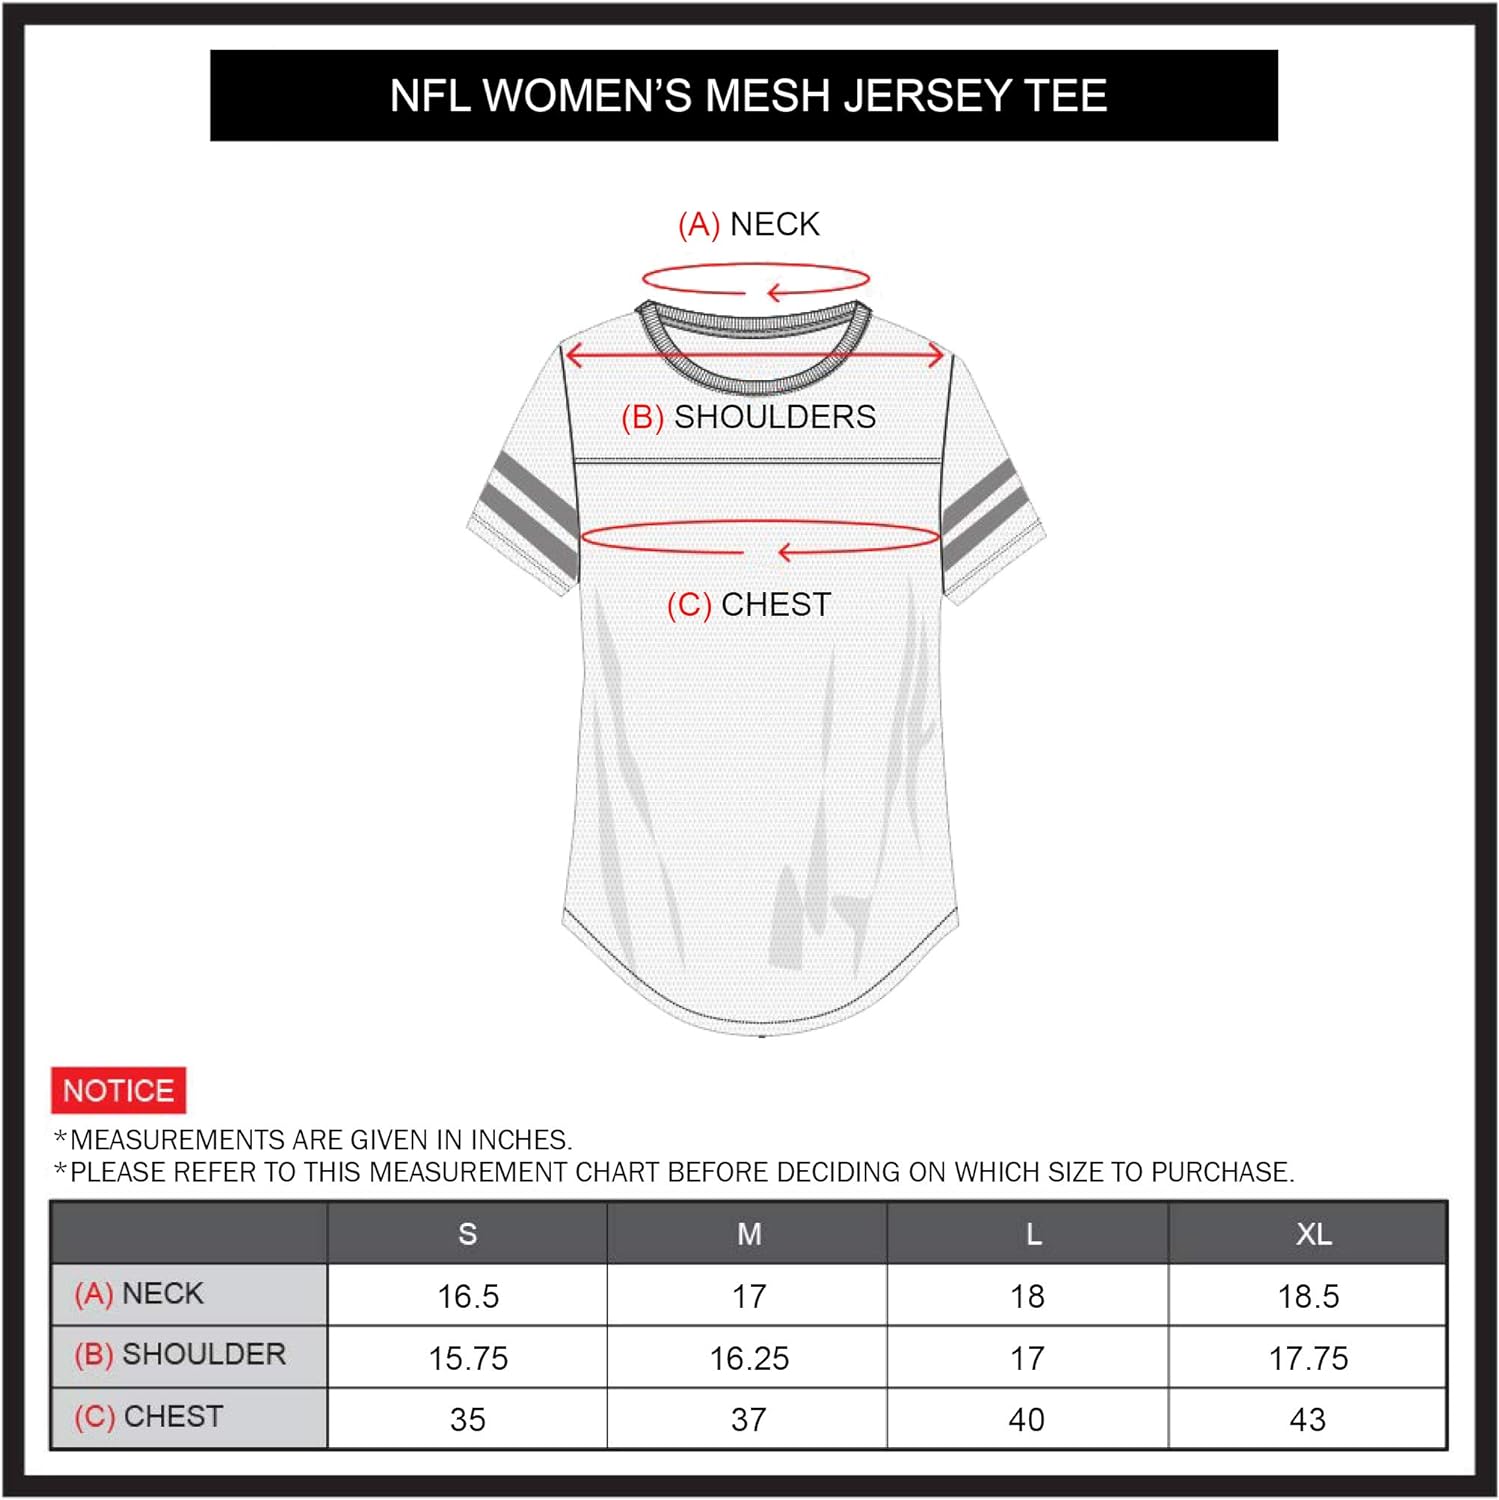 Ultra Game NFL New York Giants Womens Soft Mesh Varsity Stripe T-Shirt|New York Giants